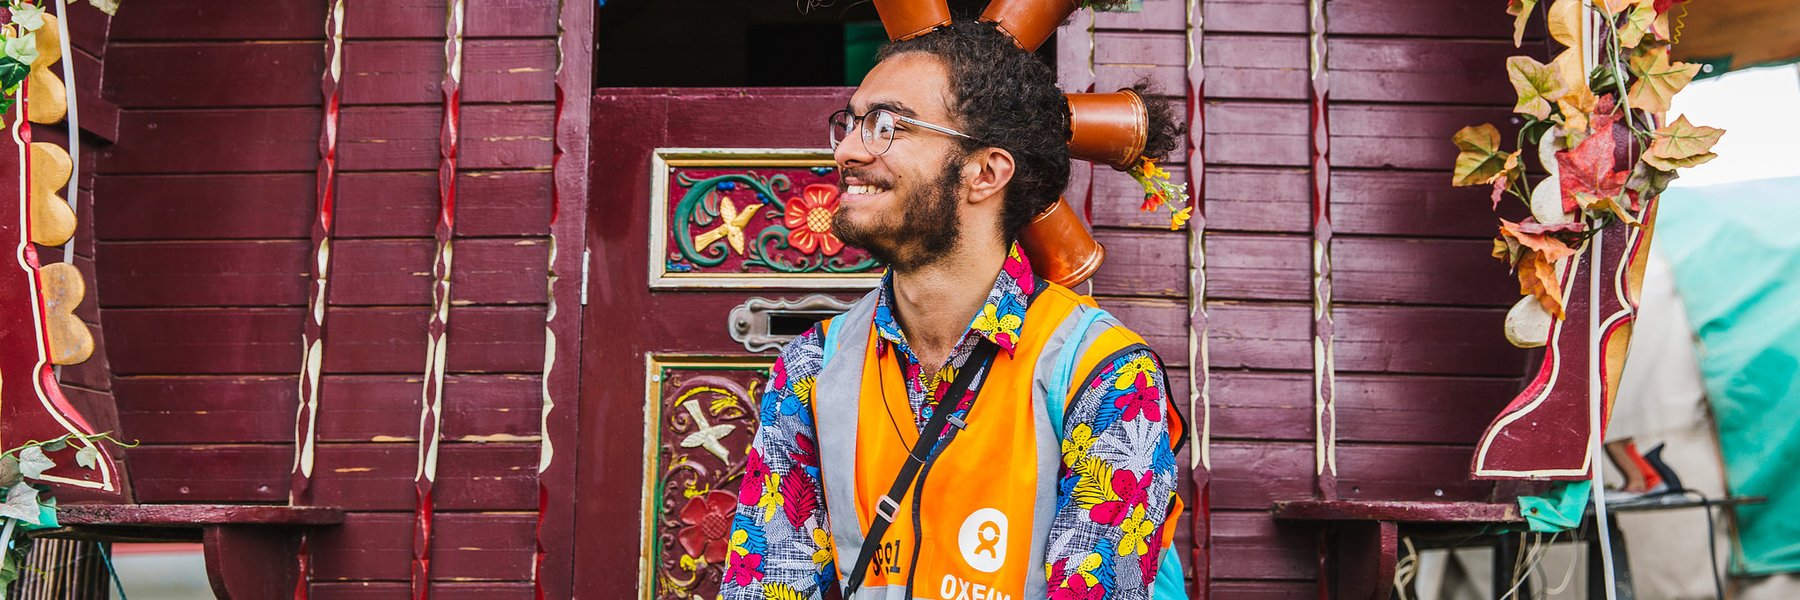 Smiling Oxfam festival steward at Shambala wearing flowerpots in hair